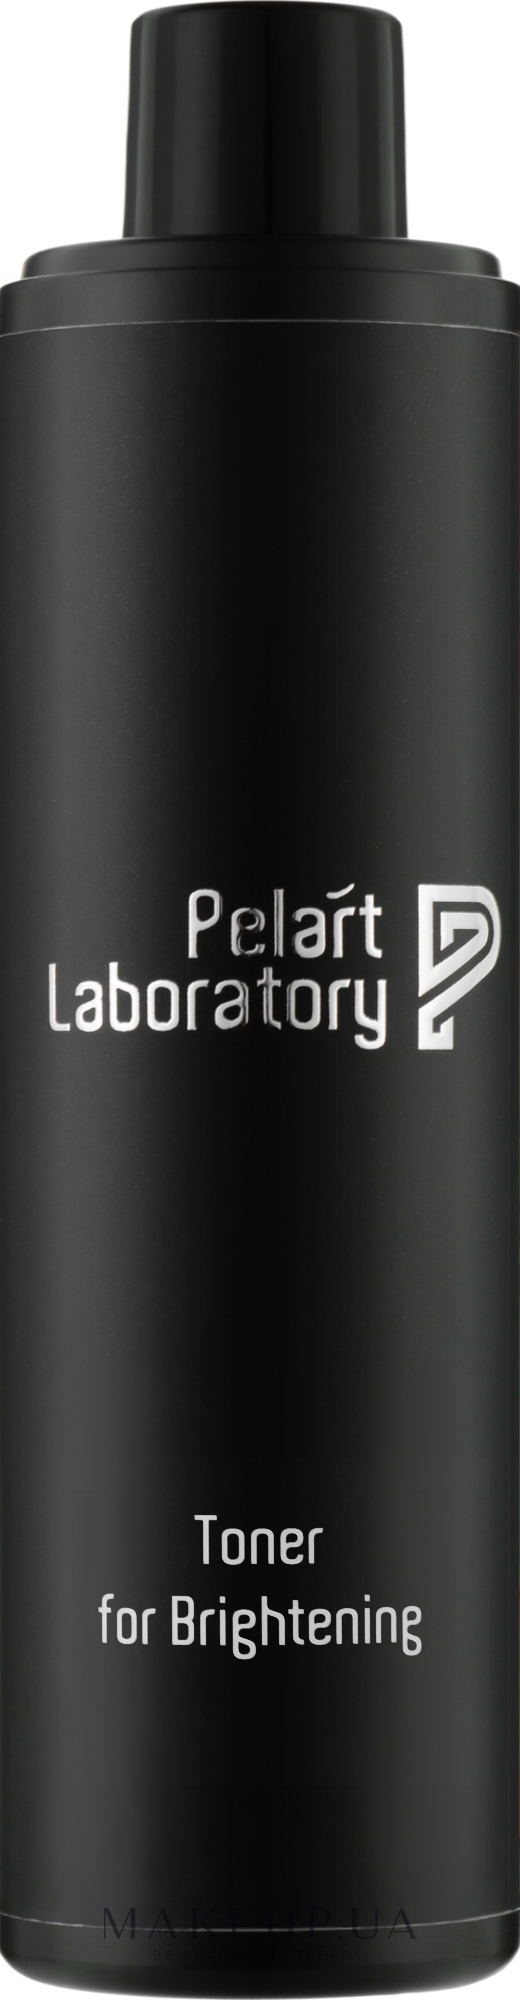 Тоник осветляющий для лица - Pelart Laboratory Toner For Brightening  — фото 250ml